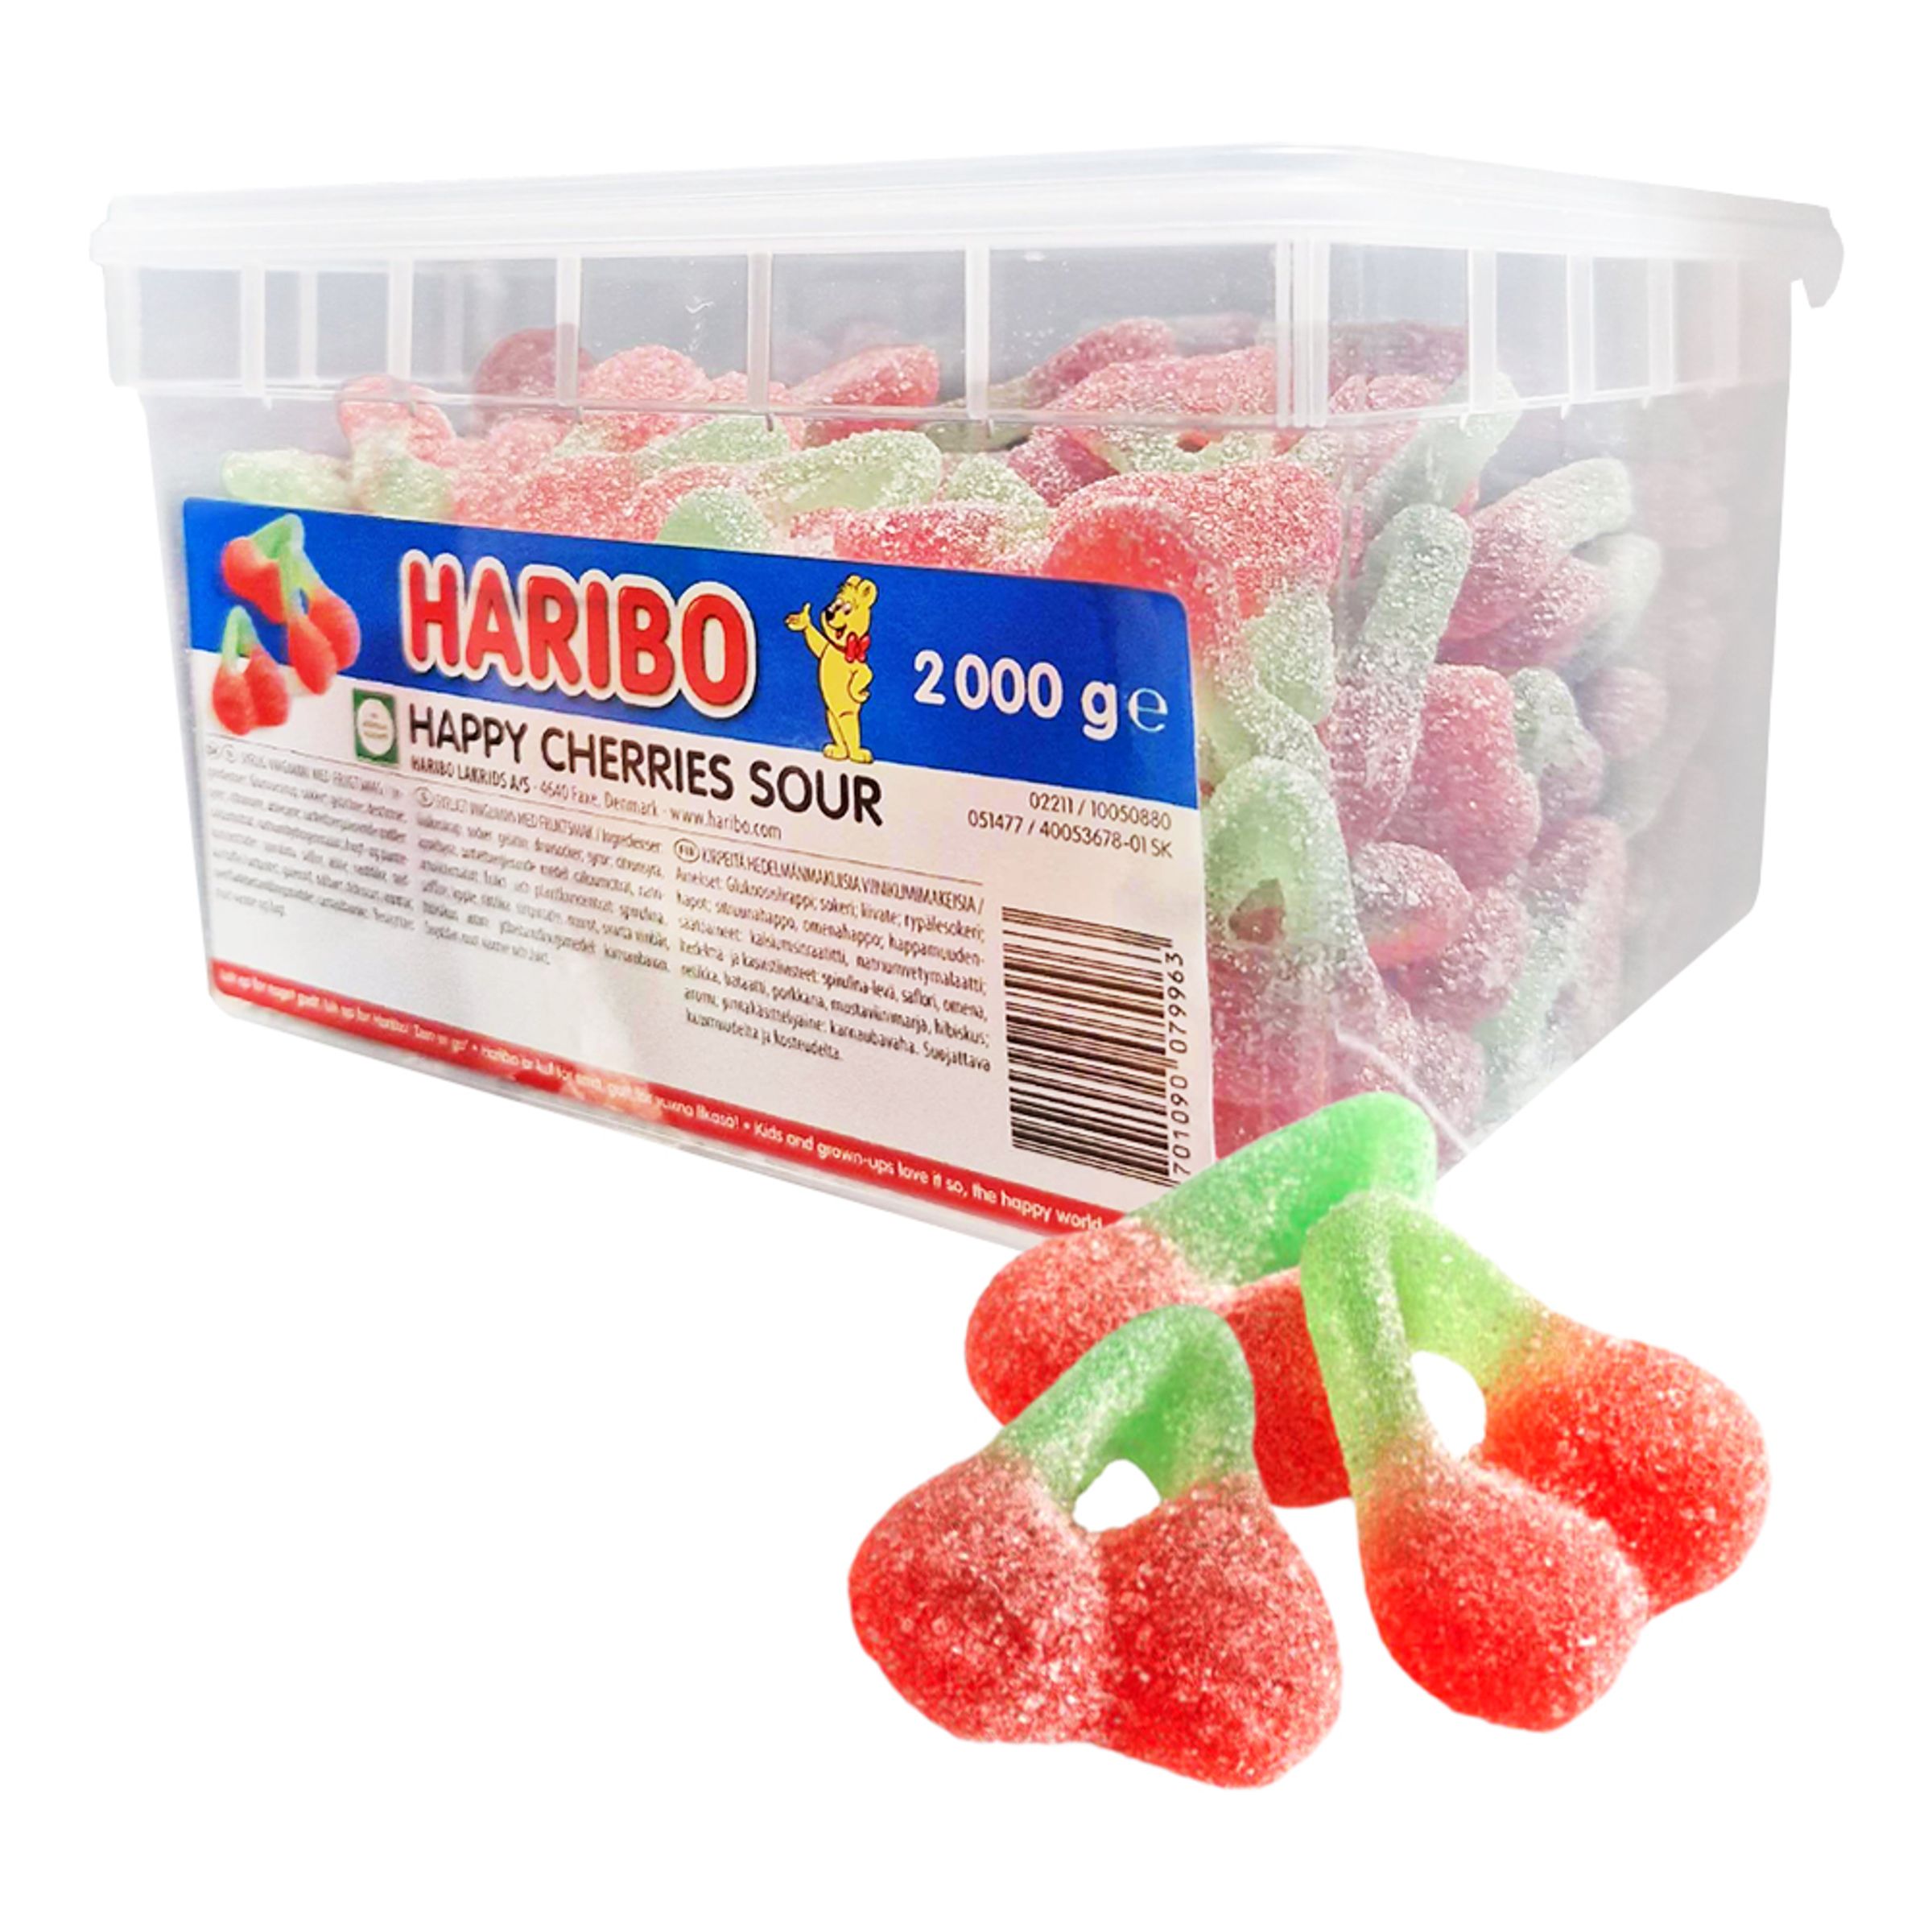 Haribo Happy Cherries Sour Storpack - 2 kg